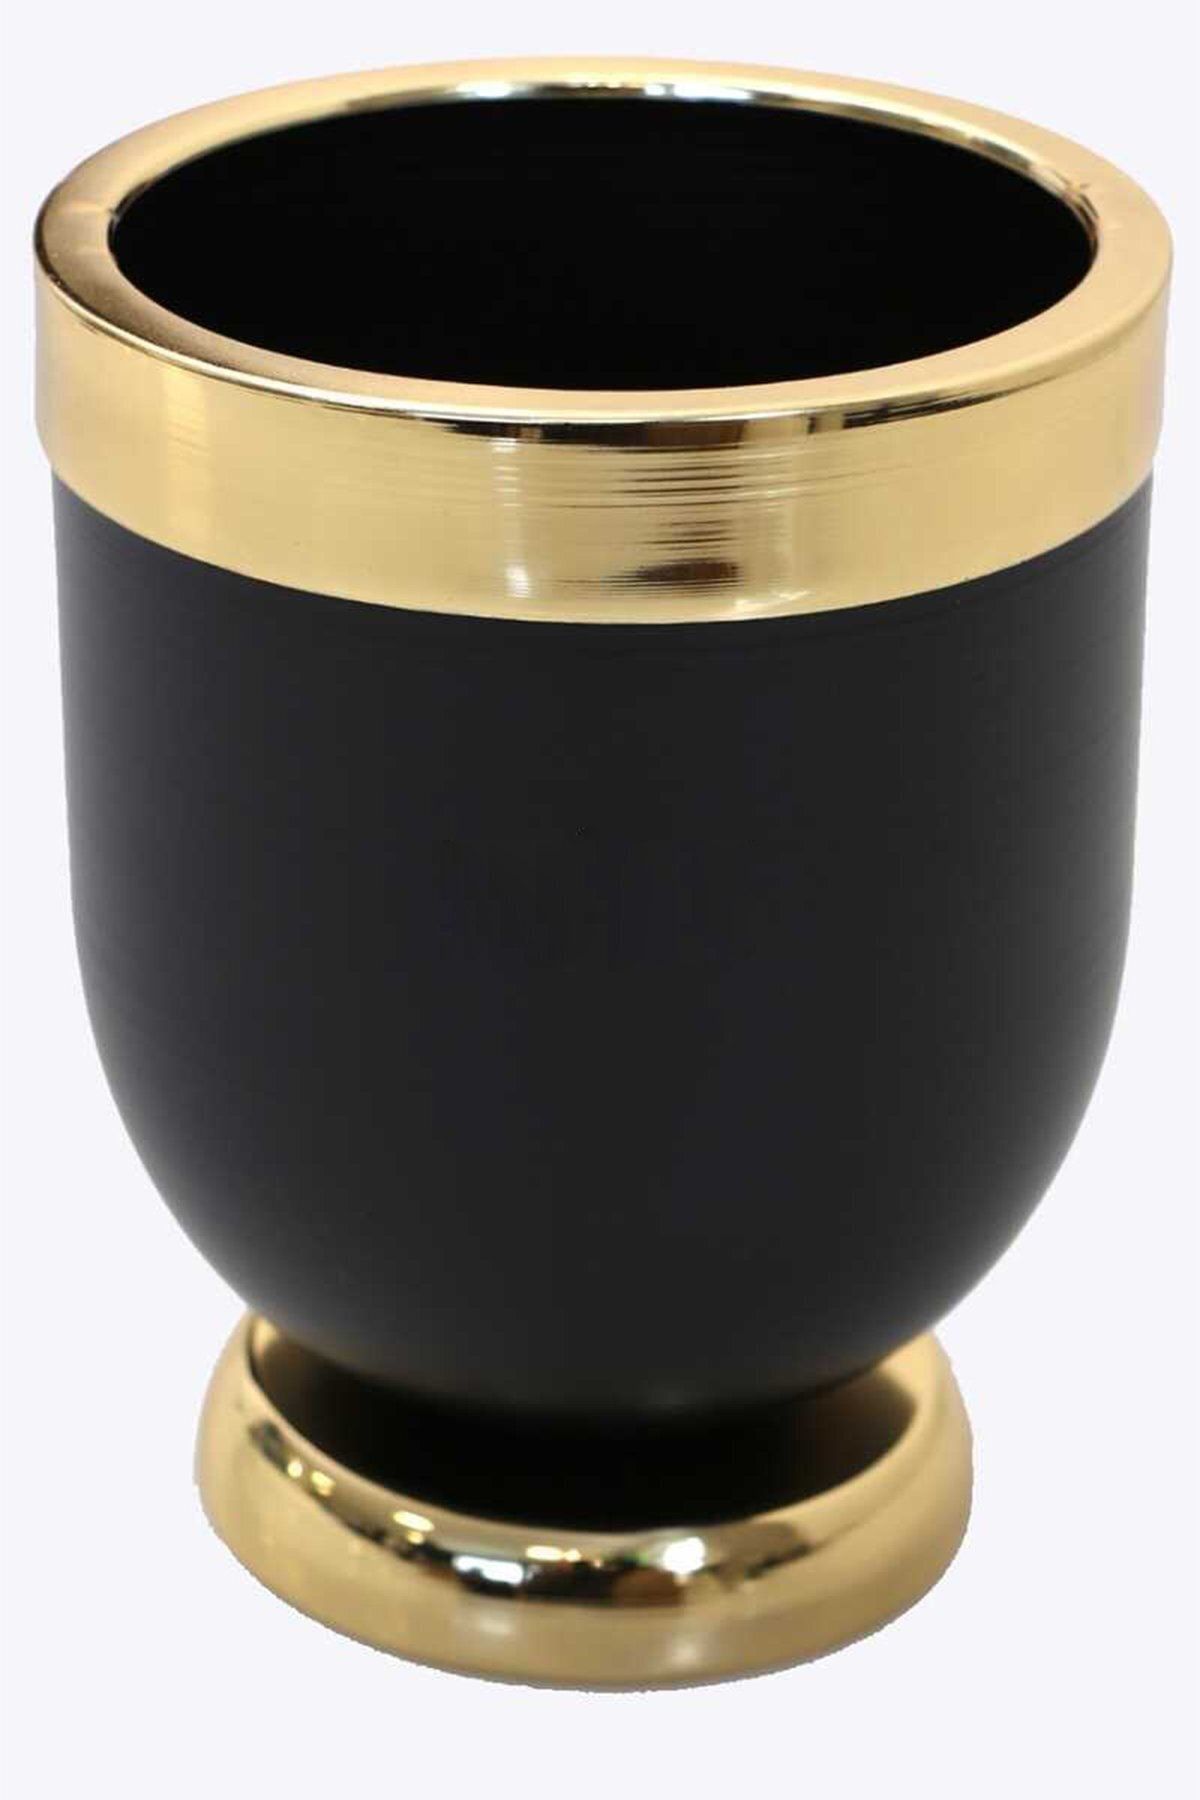 Hediye Vitrini Dekoratif Metal Vazo - Saksı Siyah Altın 20 Cm